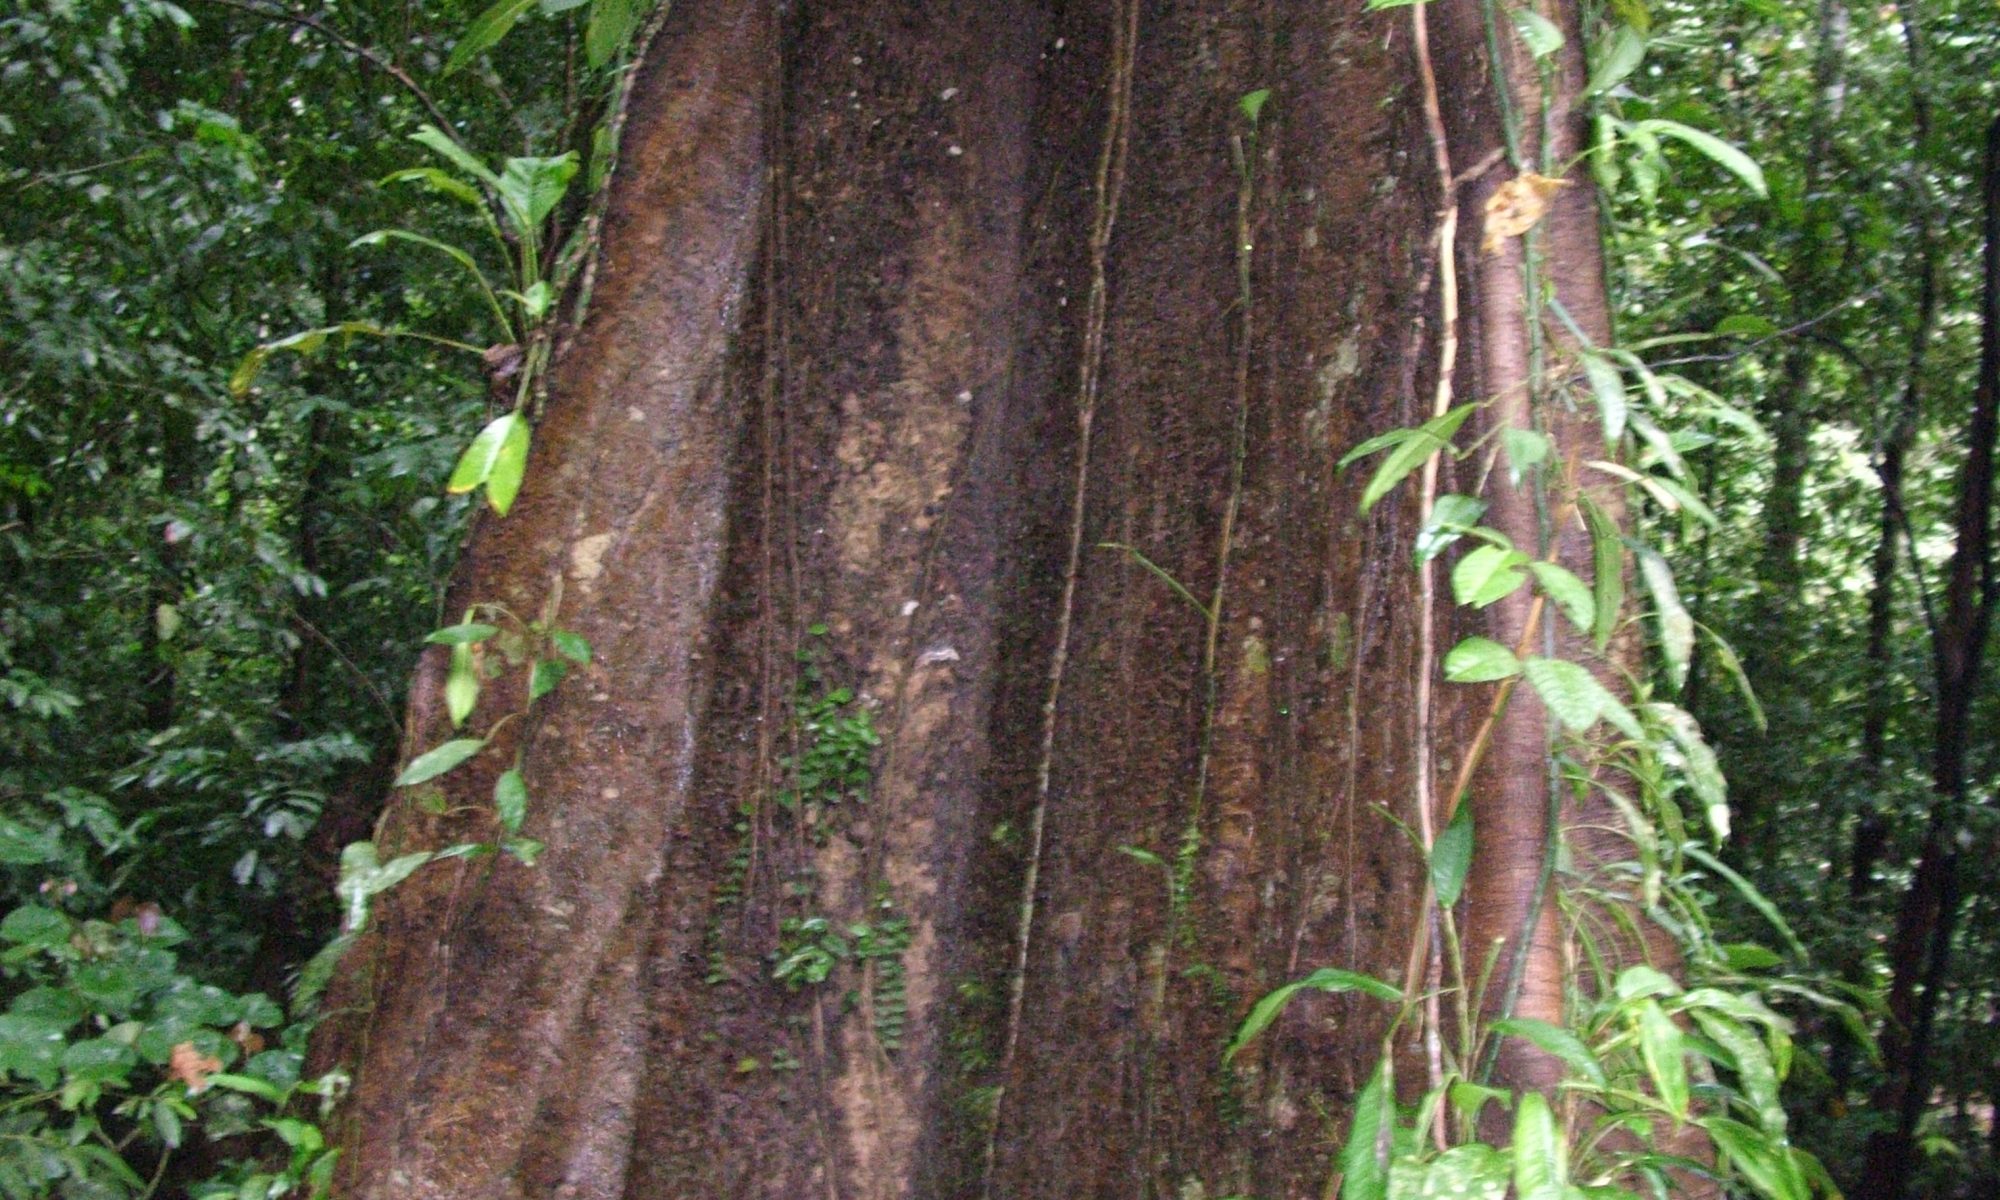 Hardwood tree